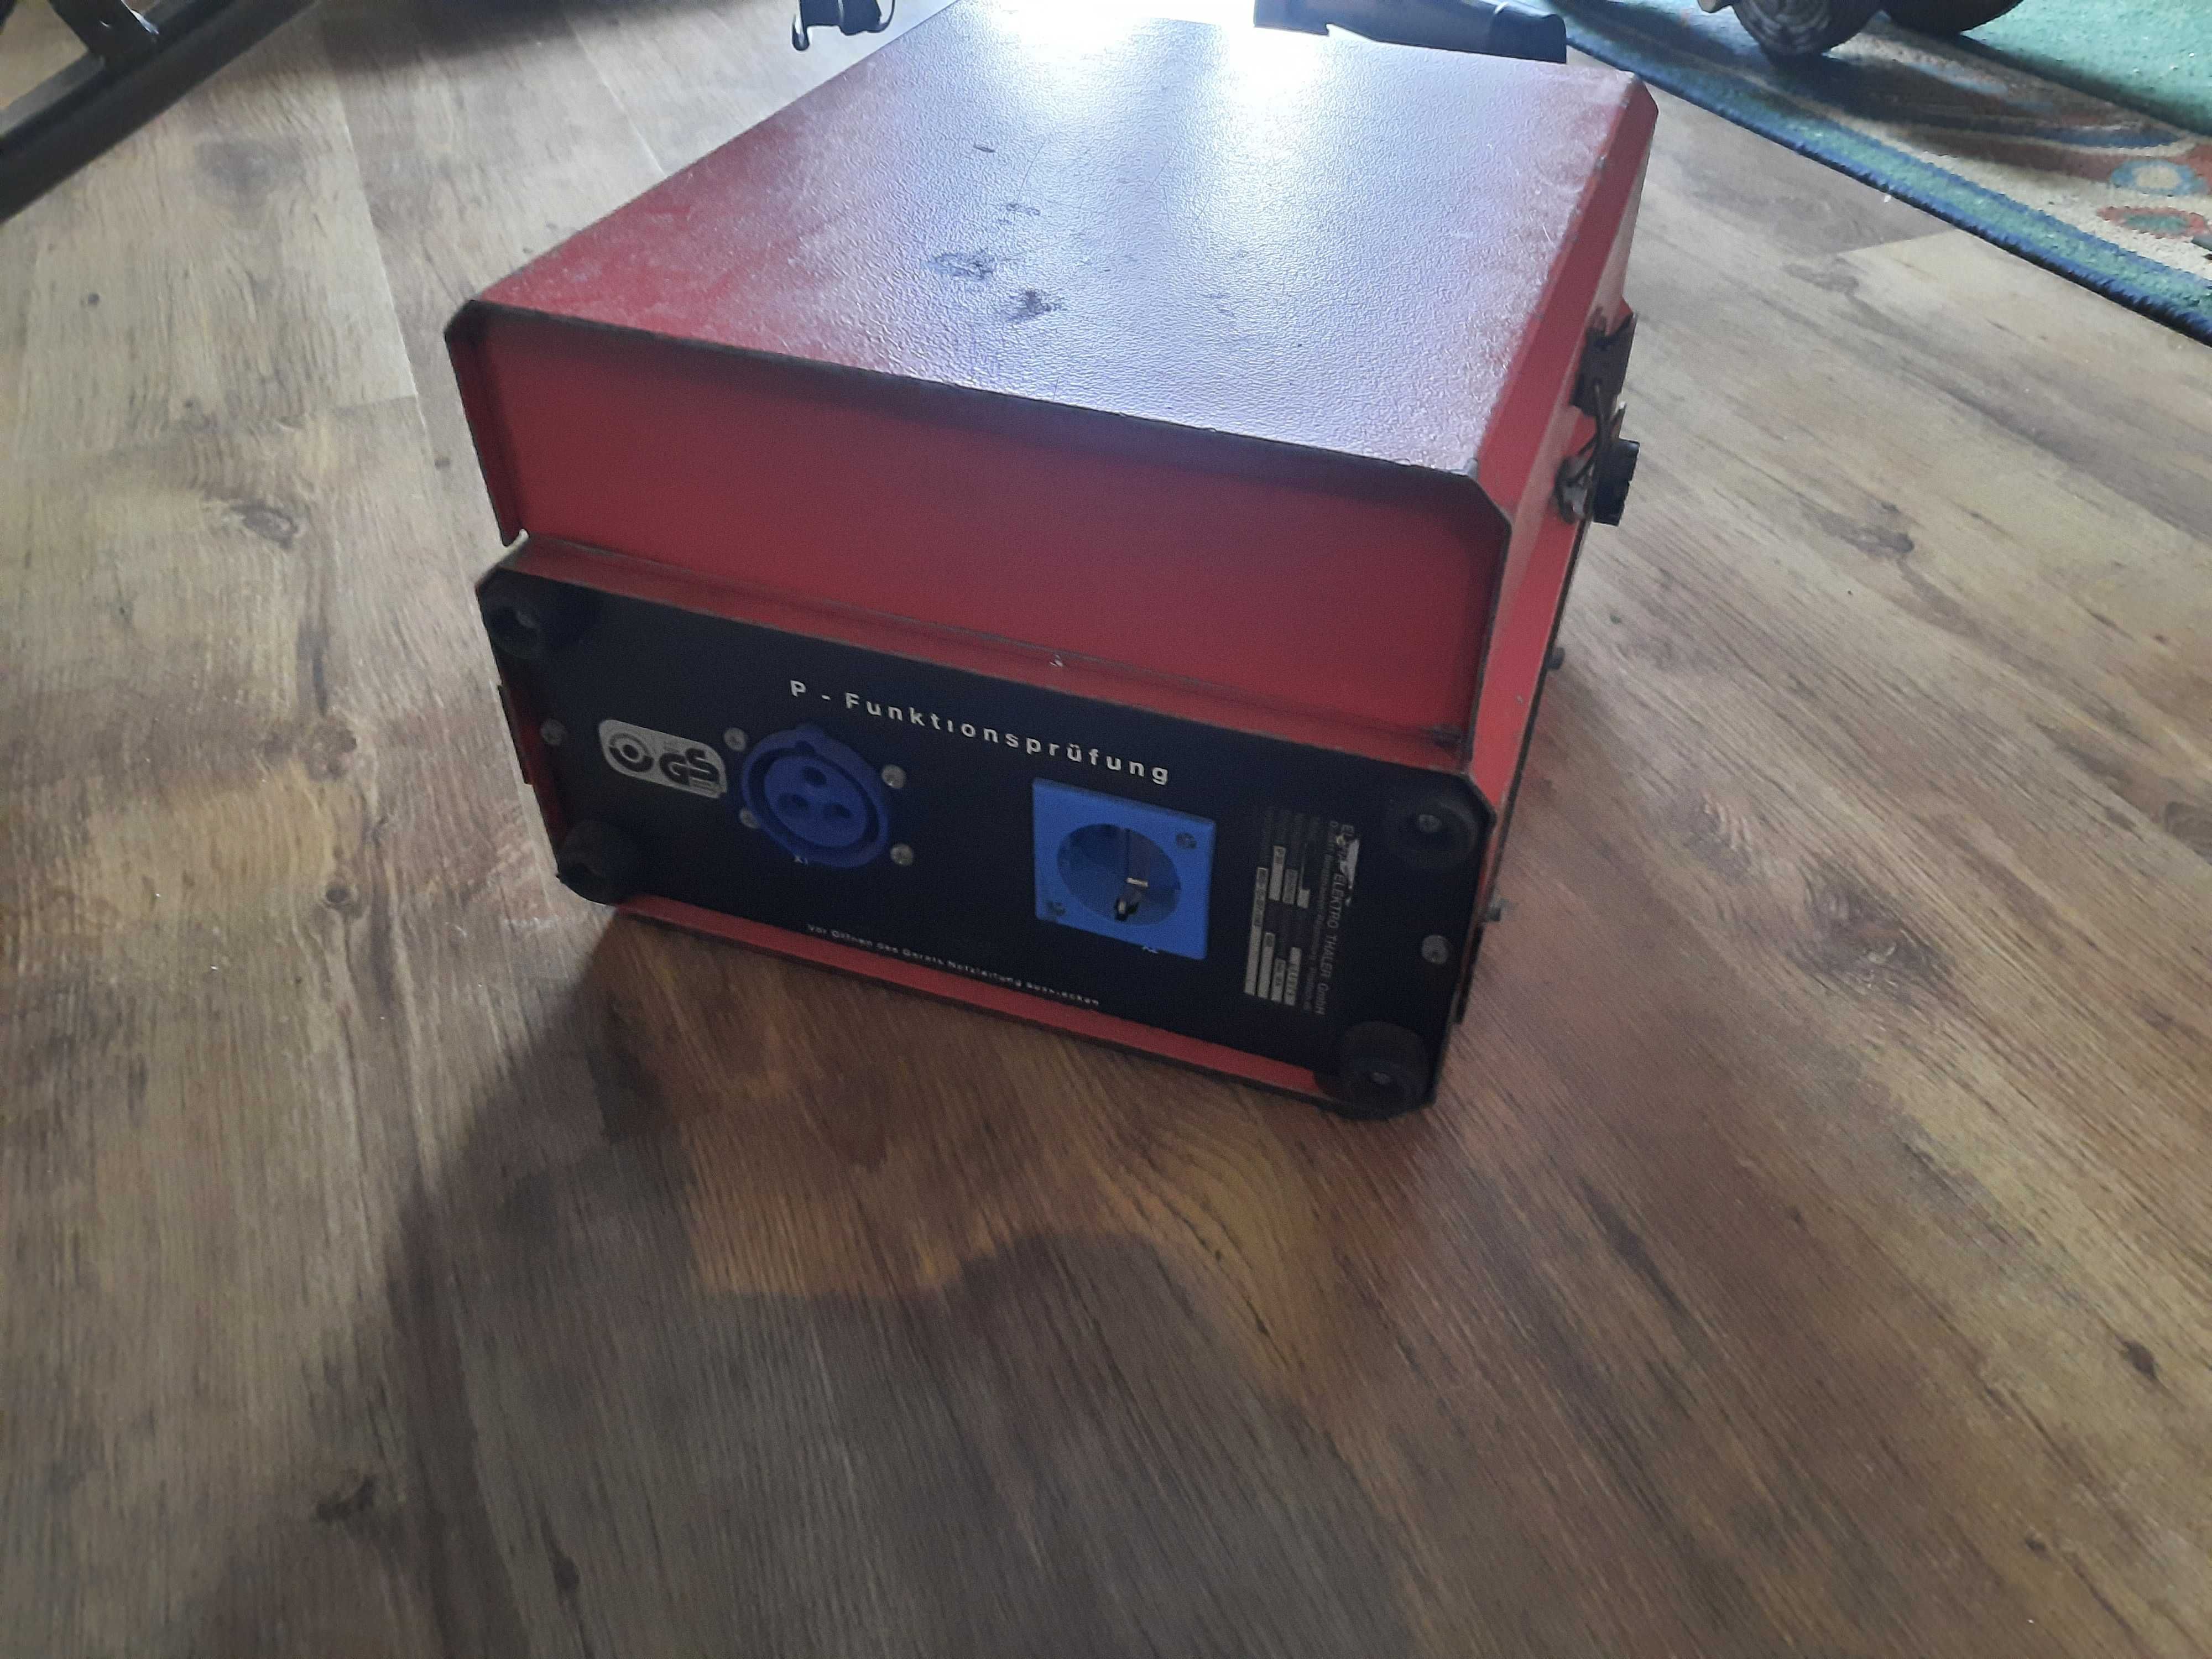 Wielofunkcyjny tester sterowni elektryki Eltha MP0105